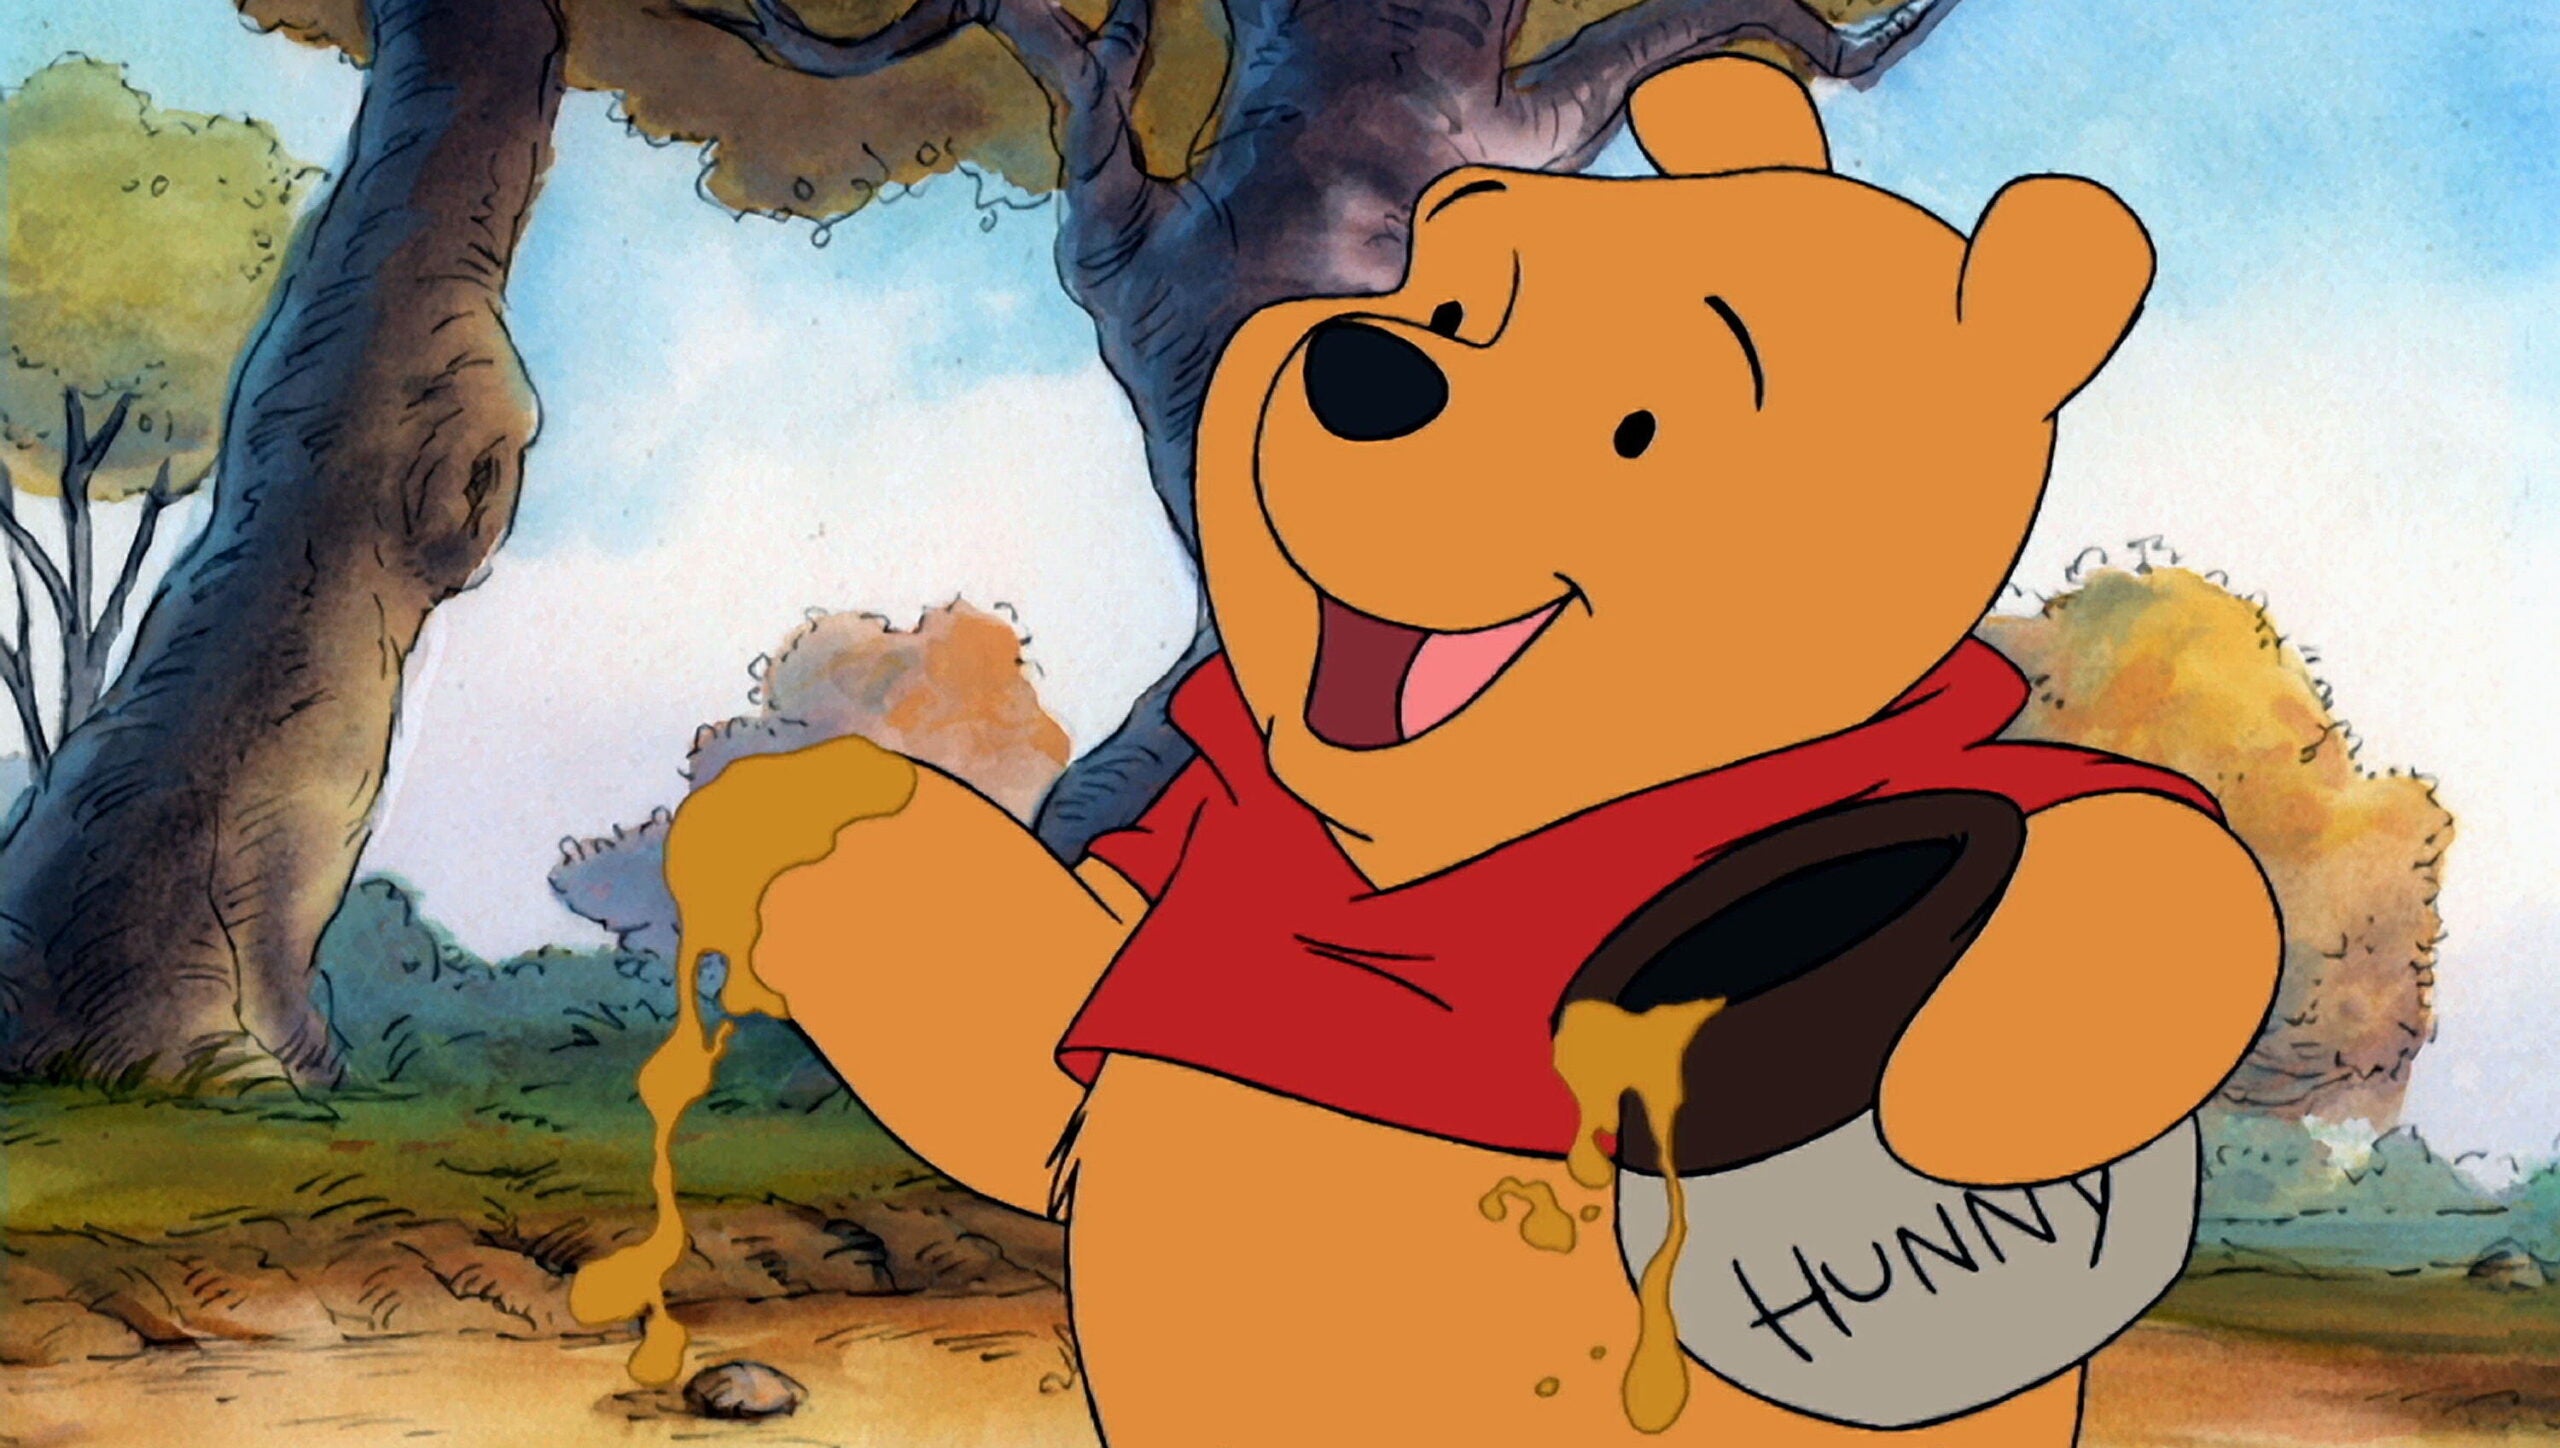 วินนี่ เดอะ พูห์ (Winnie-the-Pooh)